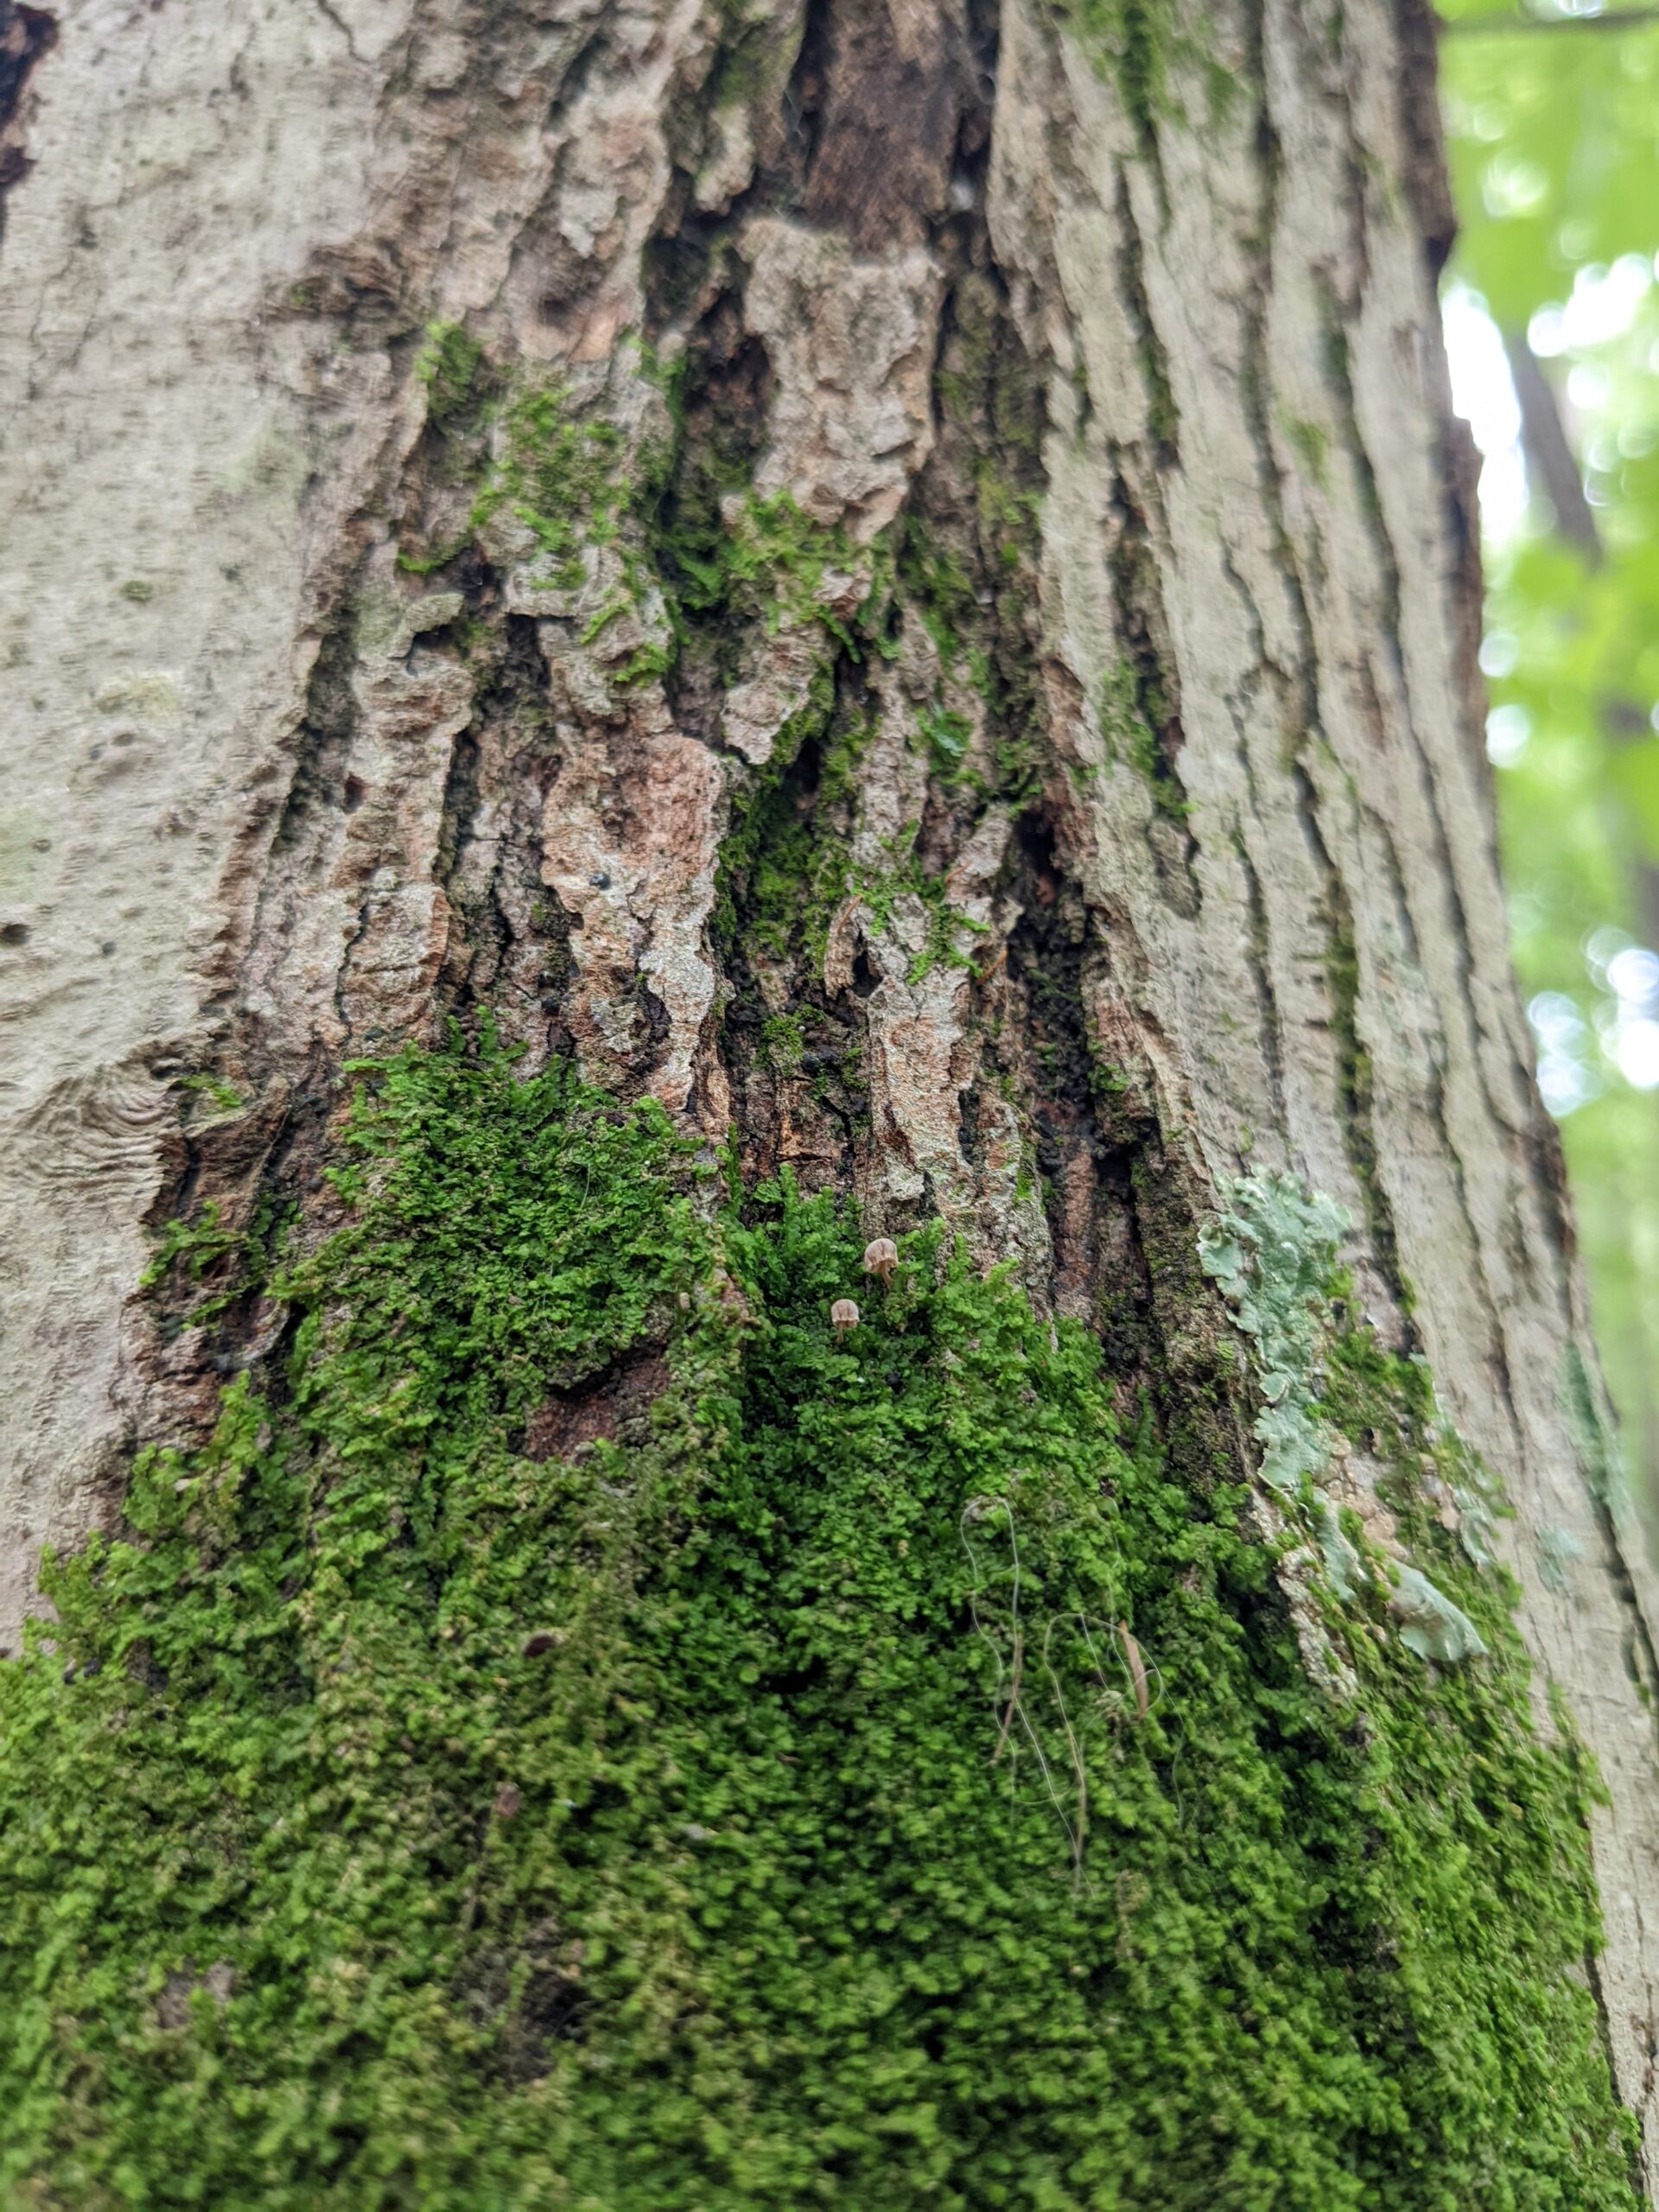 Moss on a Tree